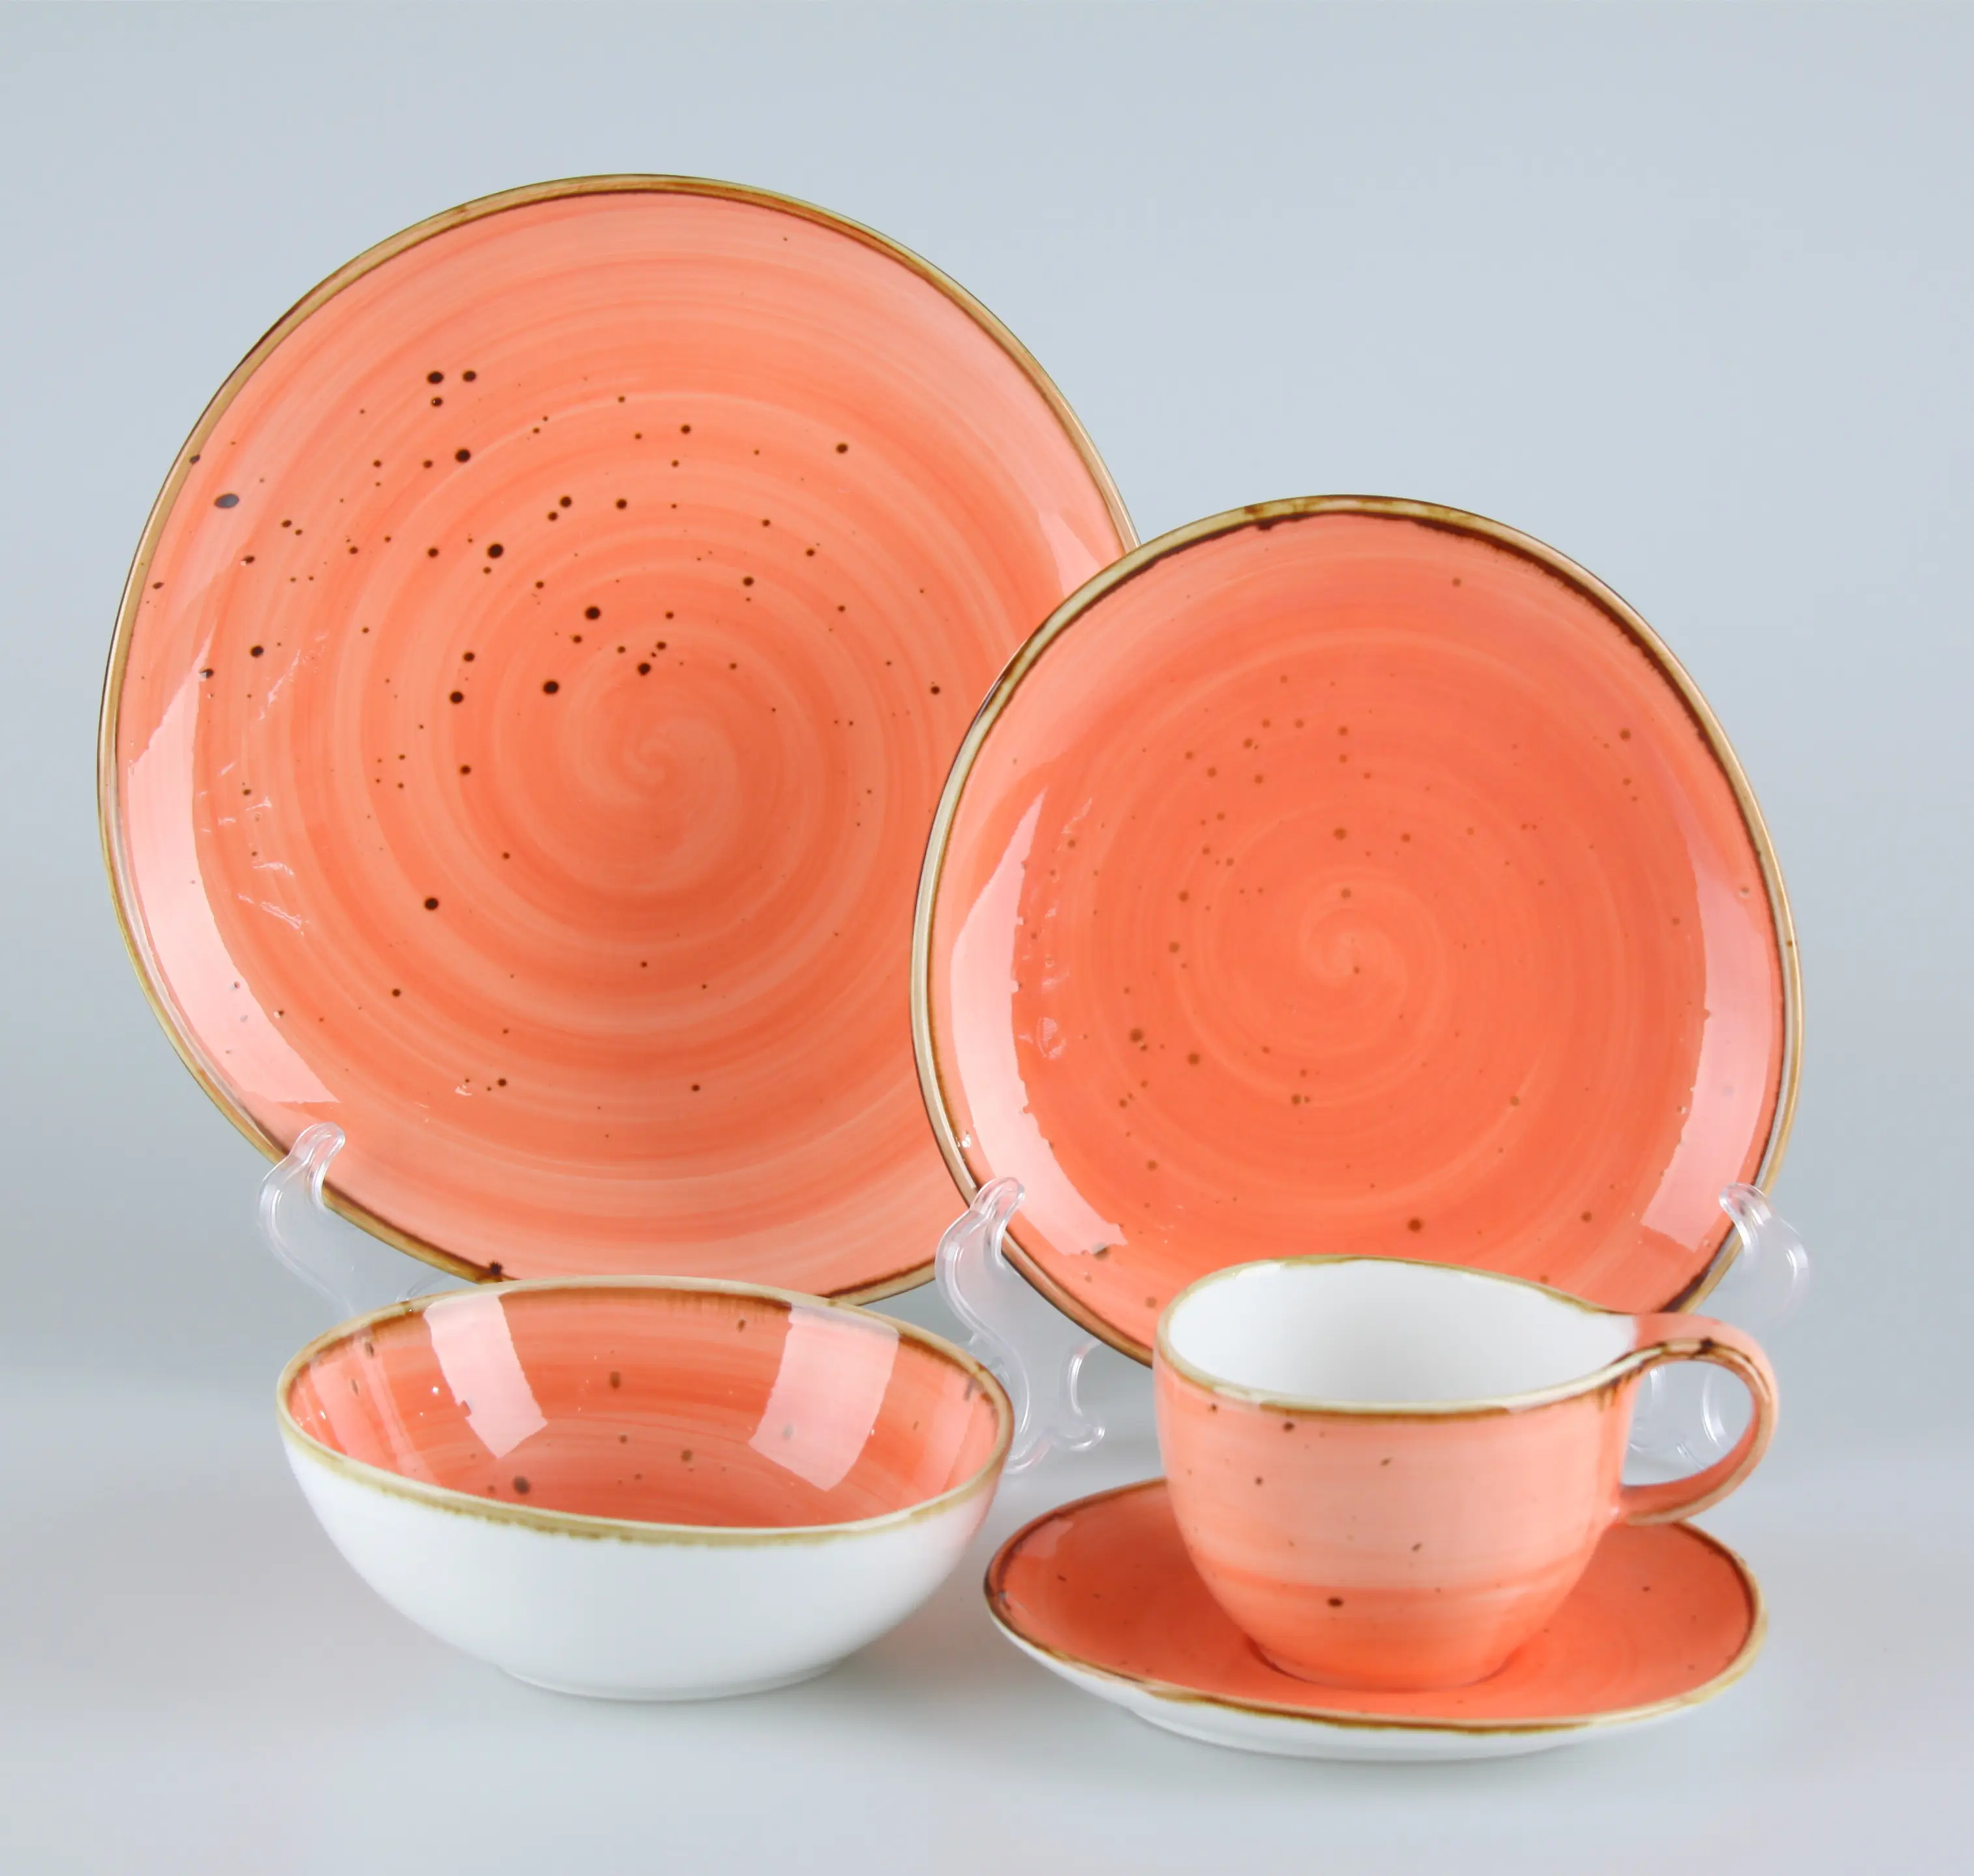 Juego de vajilla de cerámica Estilo Vintage para restaurante, plato de porcelana turco rústico esmaltado de Coral, tazón, taza, vajilla